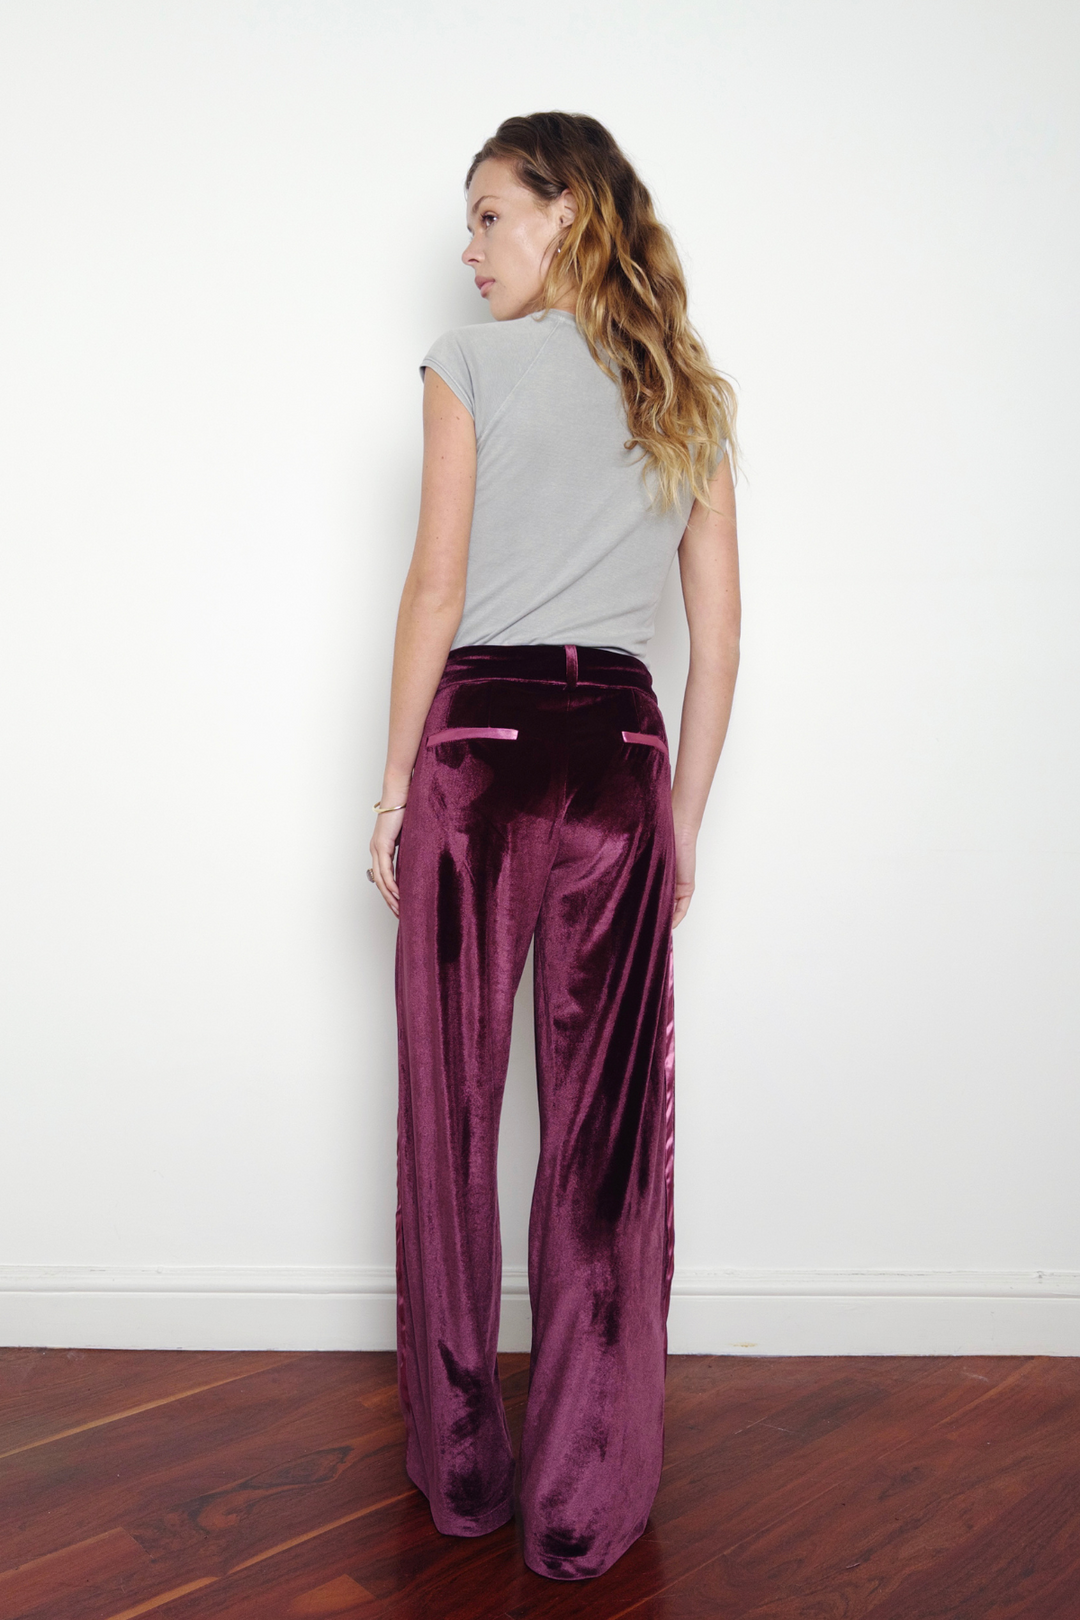 UK 8 model wearing size M in the purple velvet wide-leg trousers